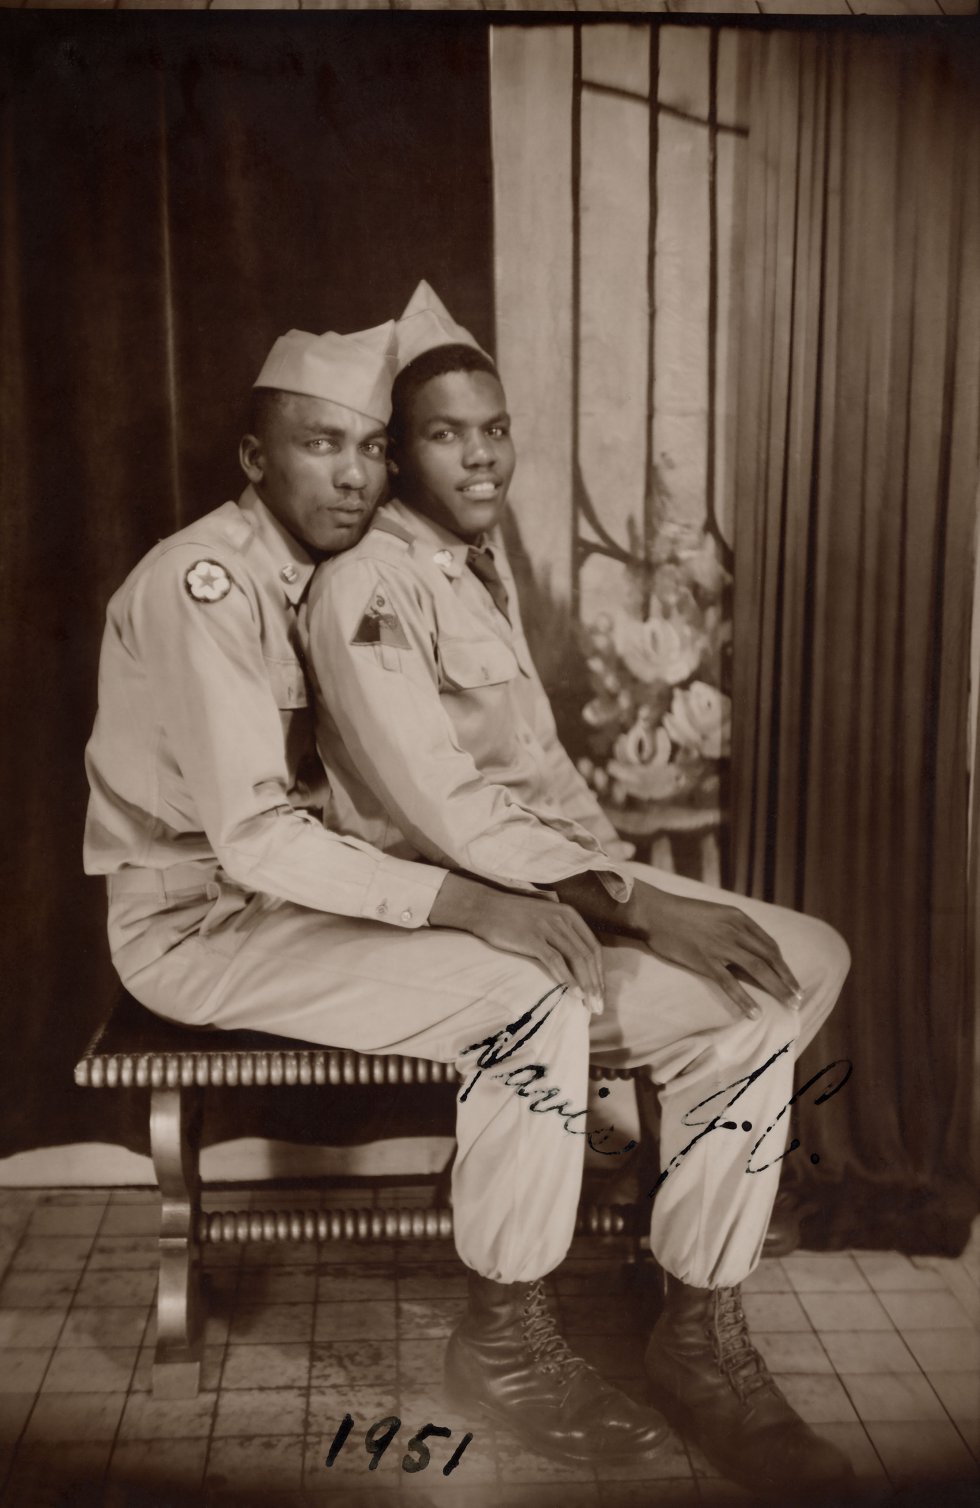 Esta fotografia é excepcional, nela aparece escrito: "Davis & J. C." e a data: 1951. Hugh Nini e Neal Treadwell contaram ao EL PAÍS que em sua coleção só há trinta imagens de casais negros ou inter-raciais e que estão interessado em ampliar sua coleção, buscando mais imagens.